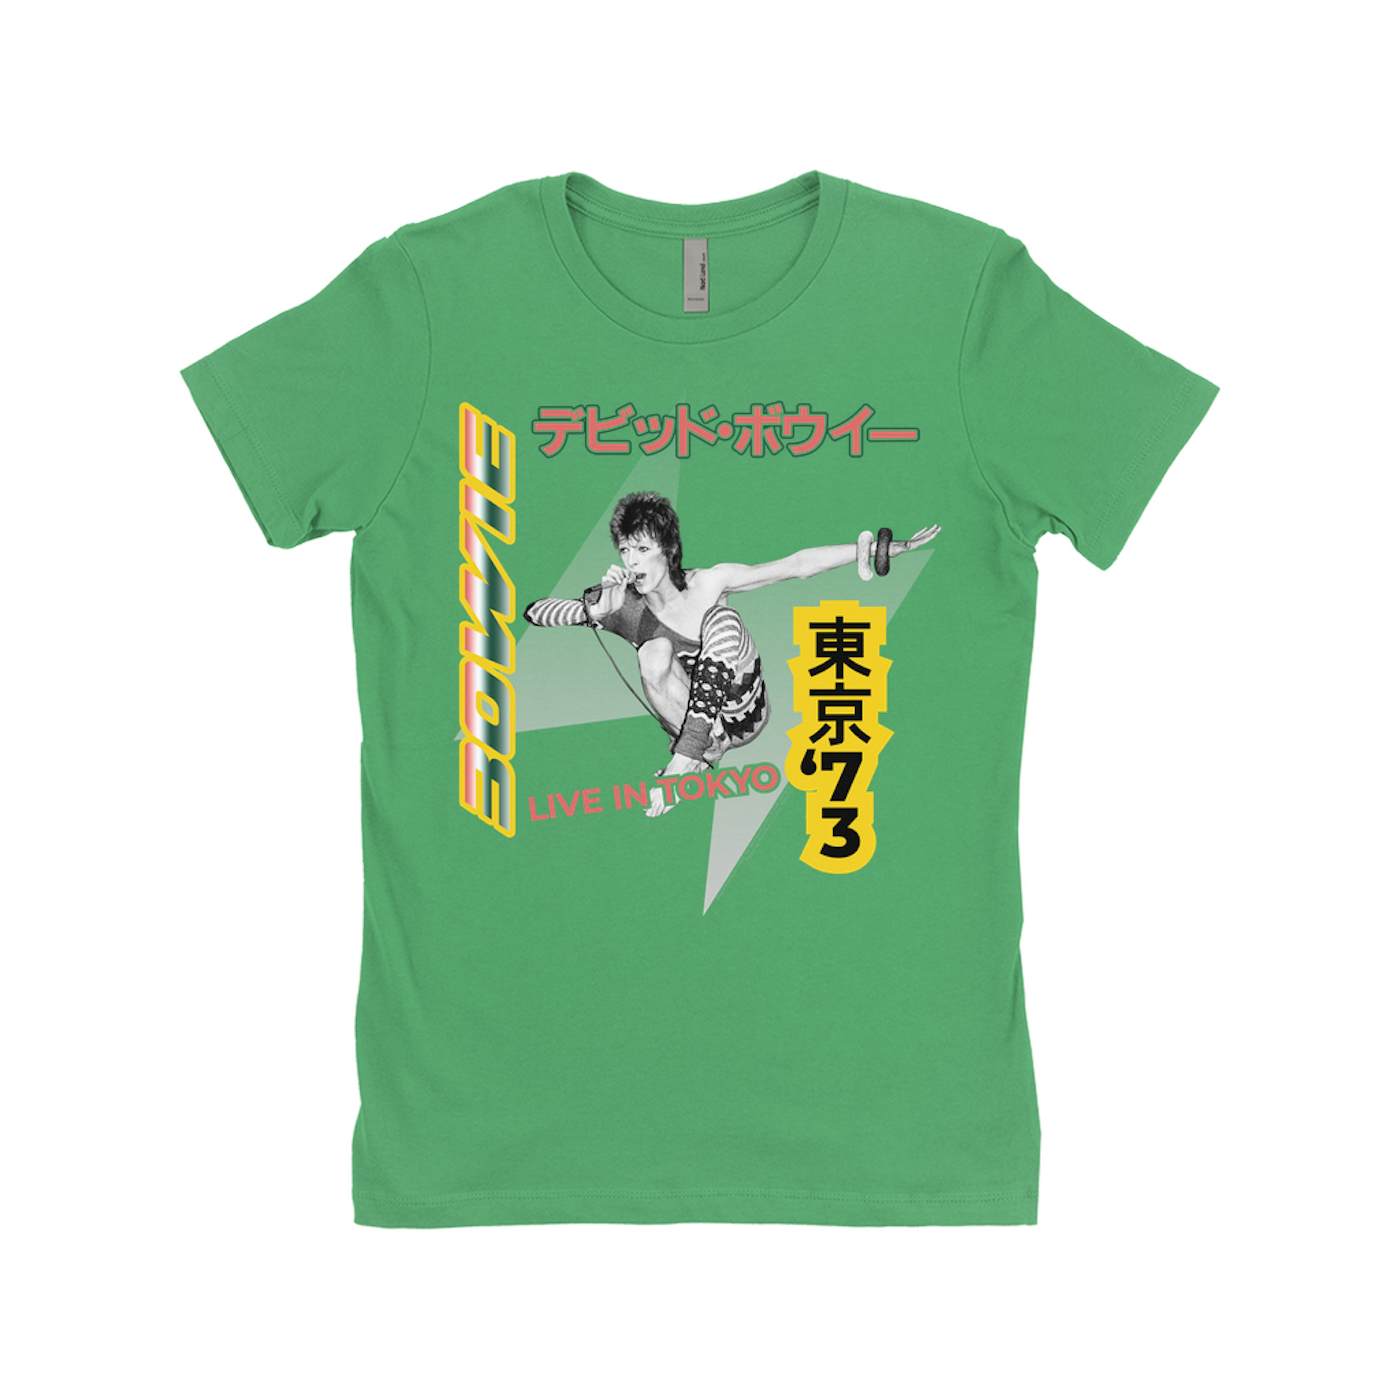 David Bowie Ladies' Boyfriend T-Shirt | 1973 Live In Tokyo (Merchbar Exclusive) David Bowie Shirt